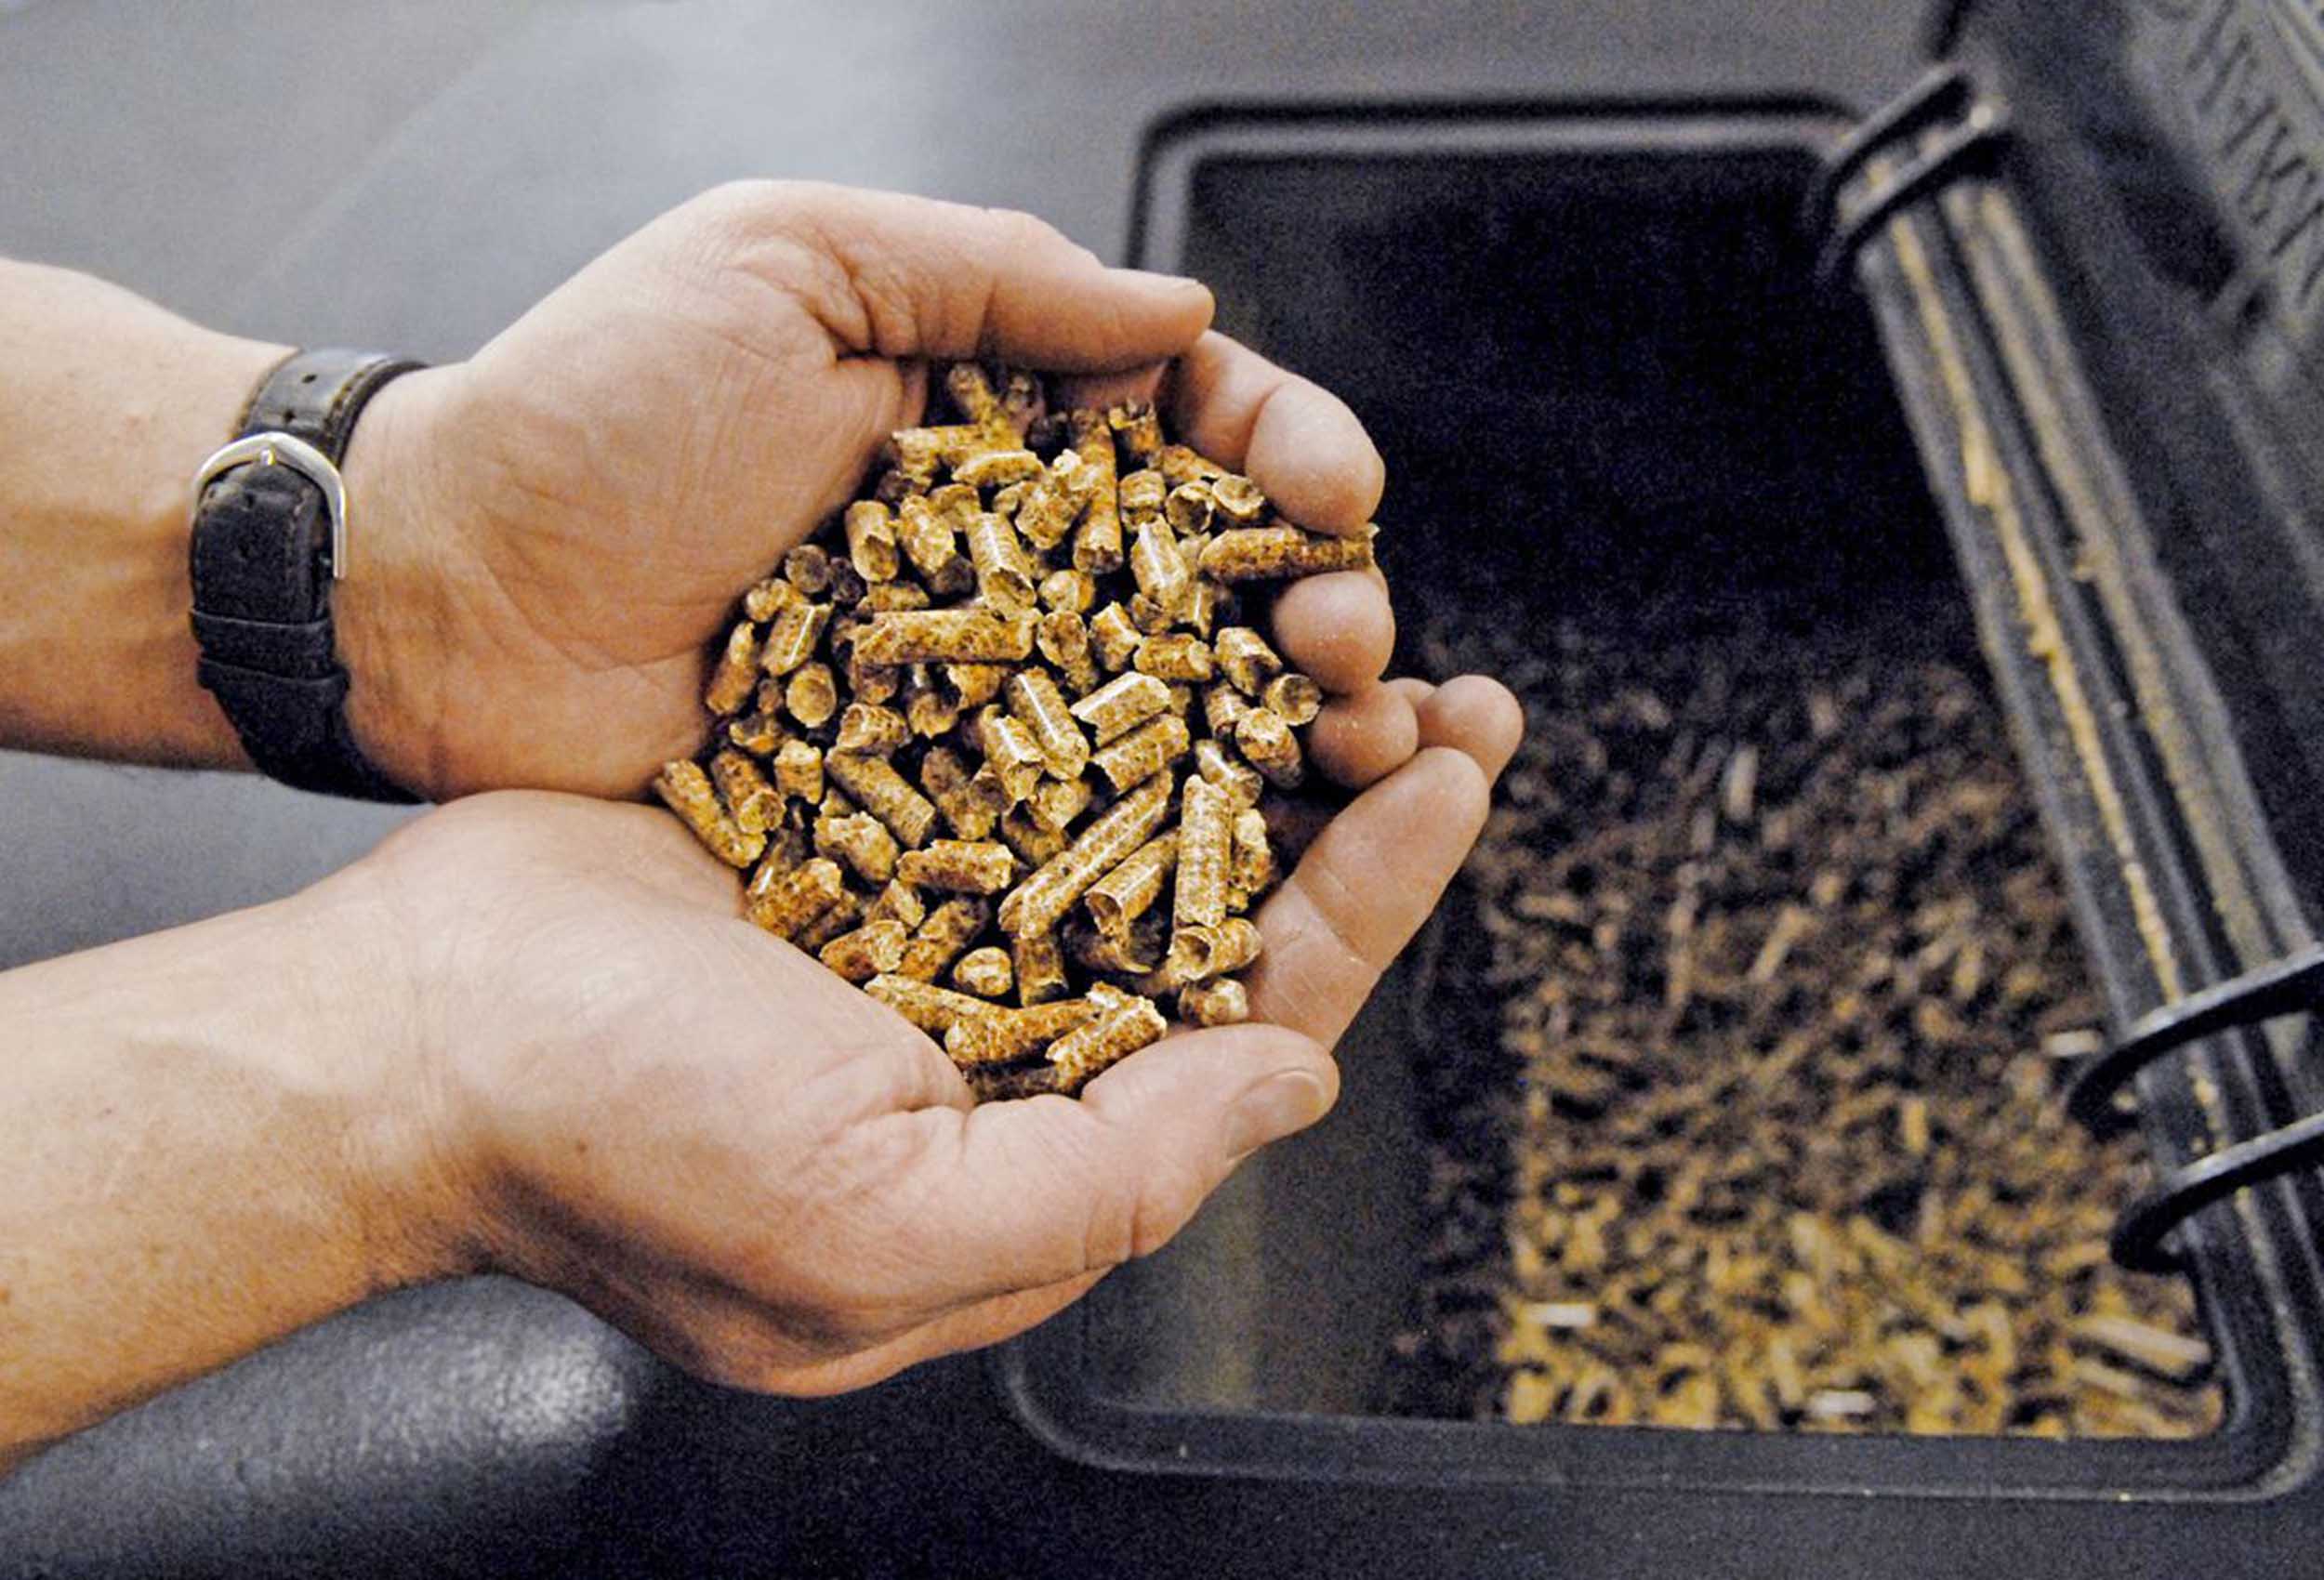 Precio promedio de pellets para estufas llega a 3.936 en Biobío